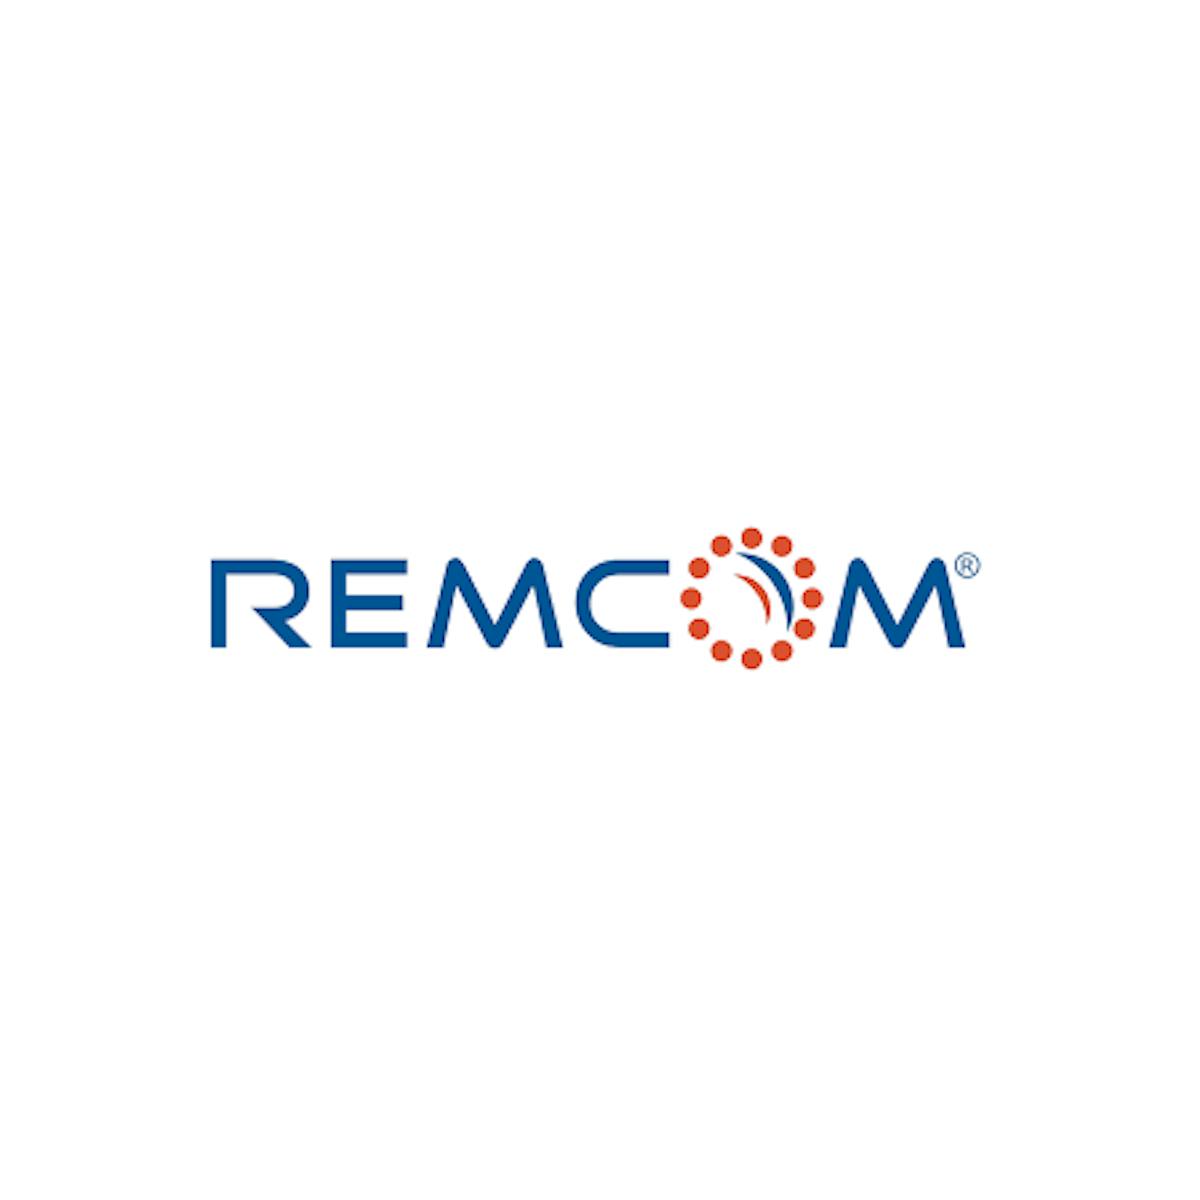 Remcom